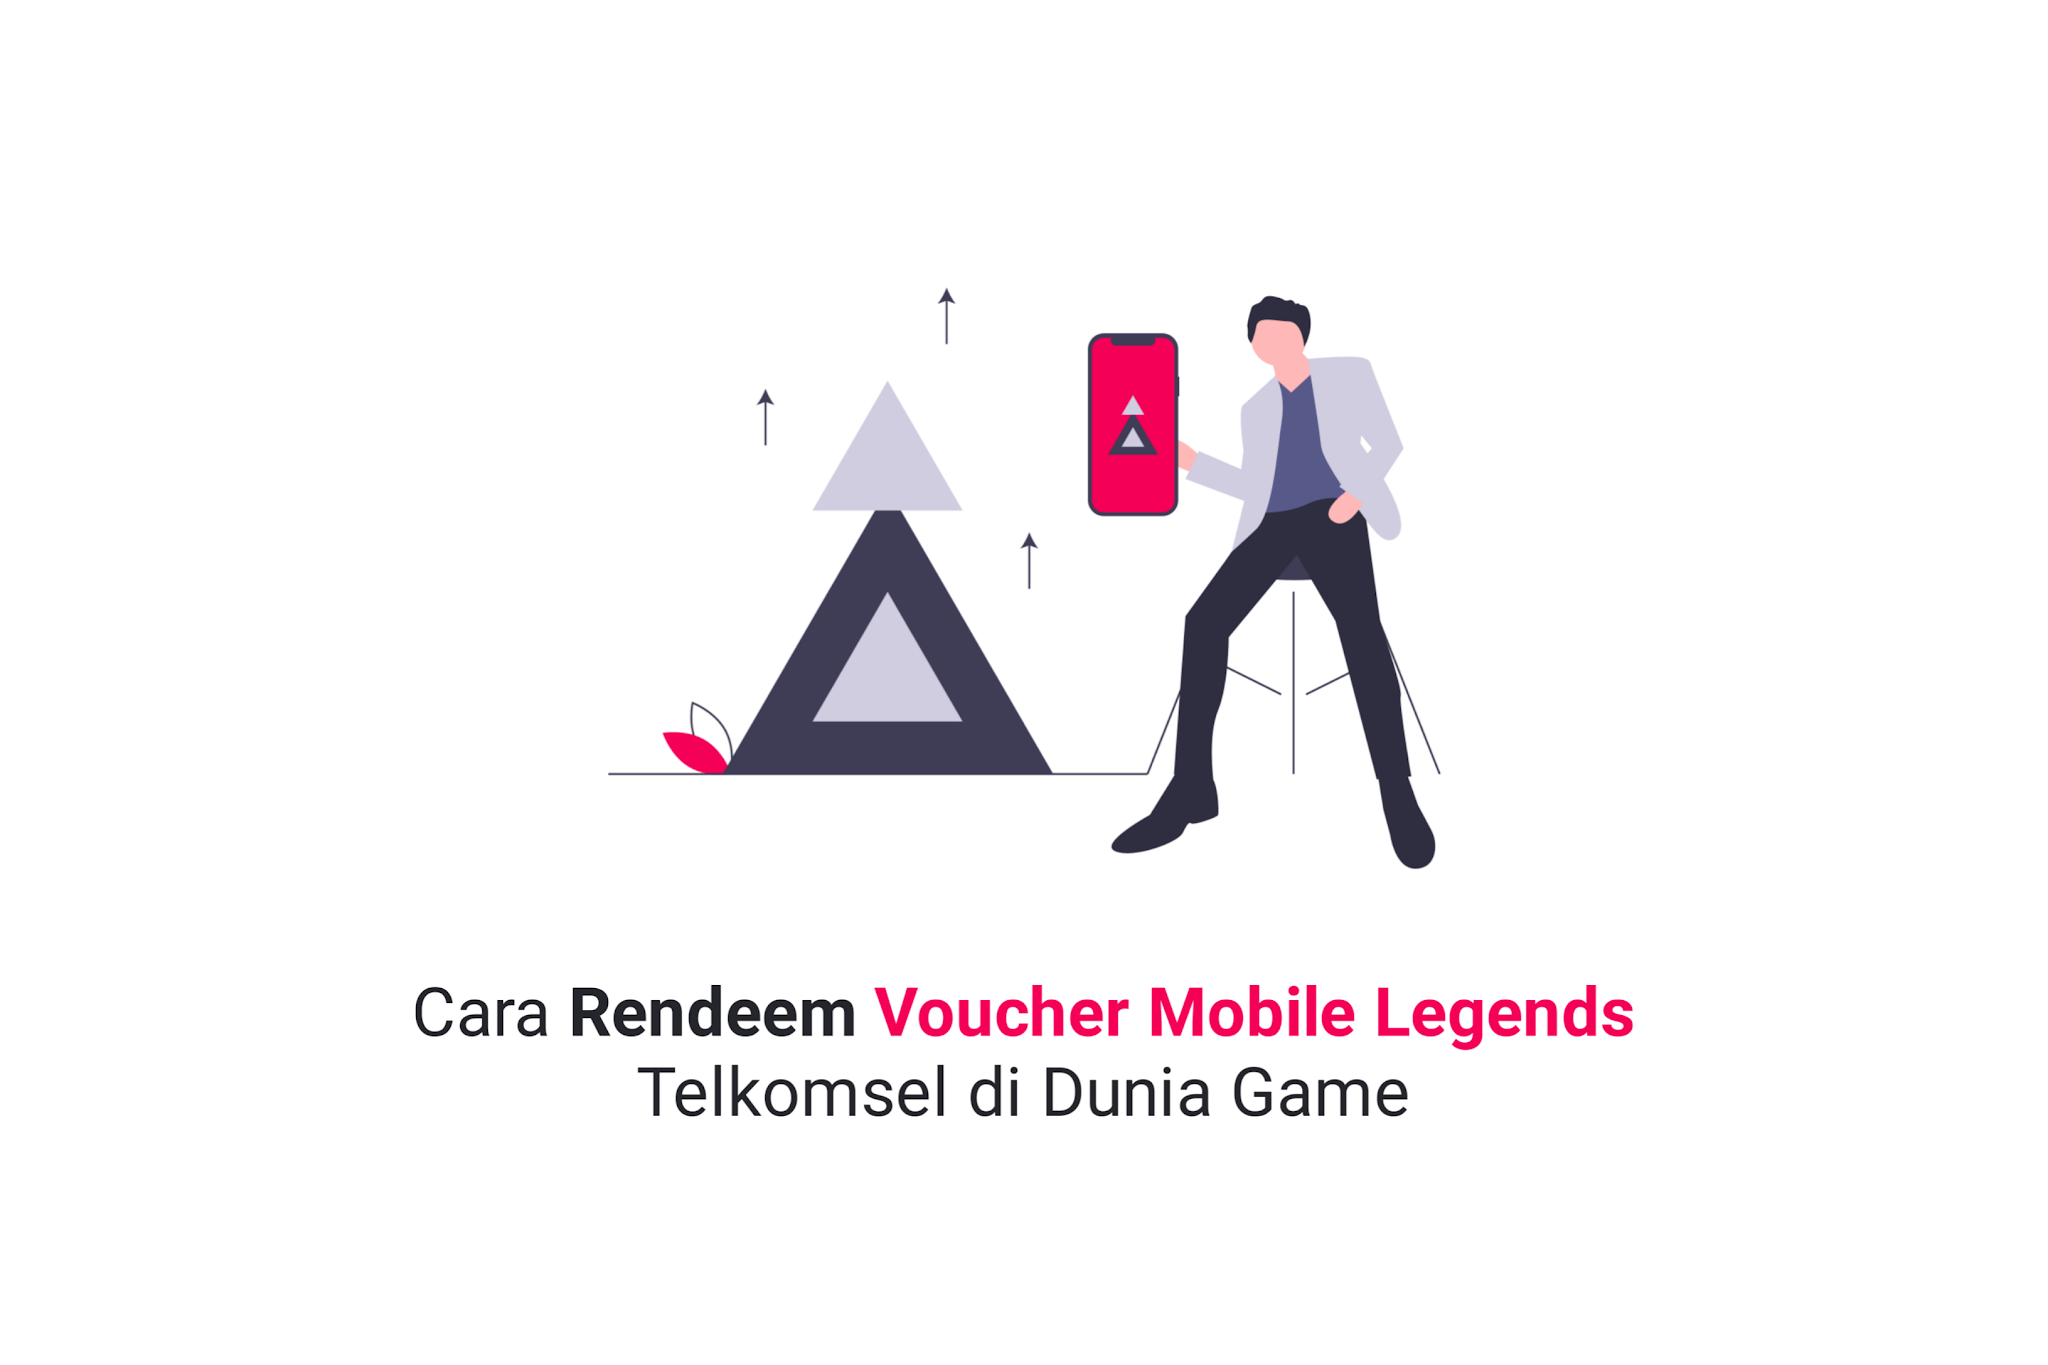 Cara Rendeem Voucher Mobile Legends Telkomsel di Dunia Game